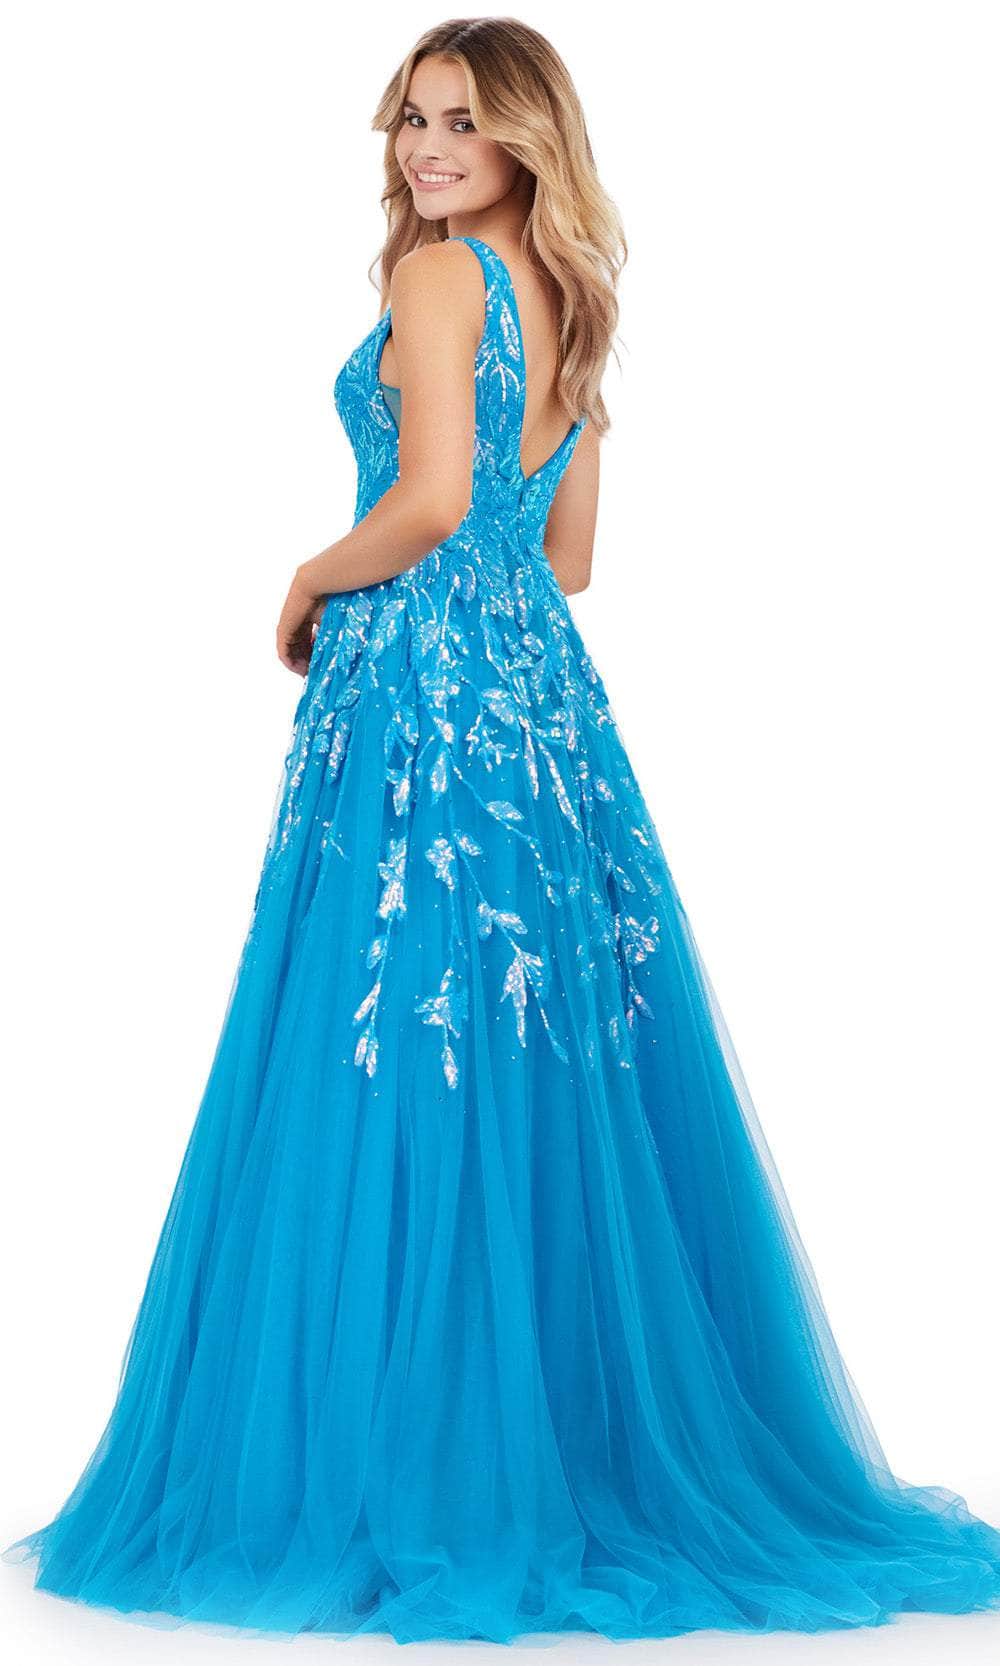 Ashley Lauren 11470 - Tulle Sequin Prom Dress Prom Dresses